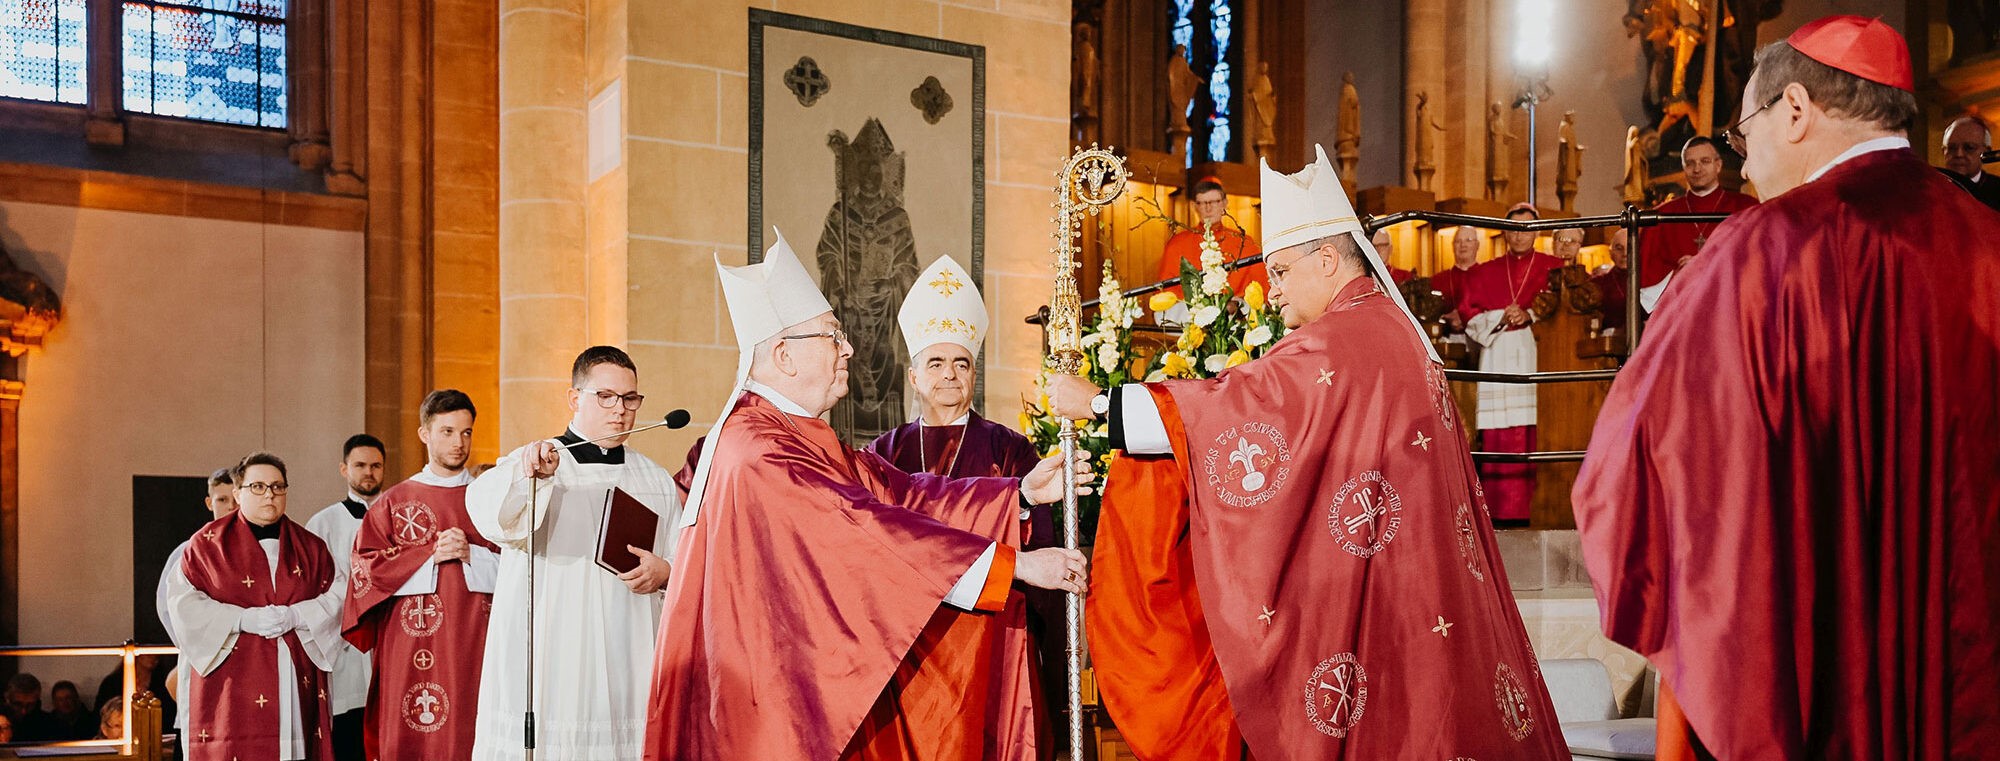 Einführung Erzbischof Udo Markus Bentz